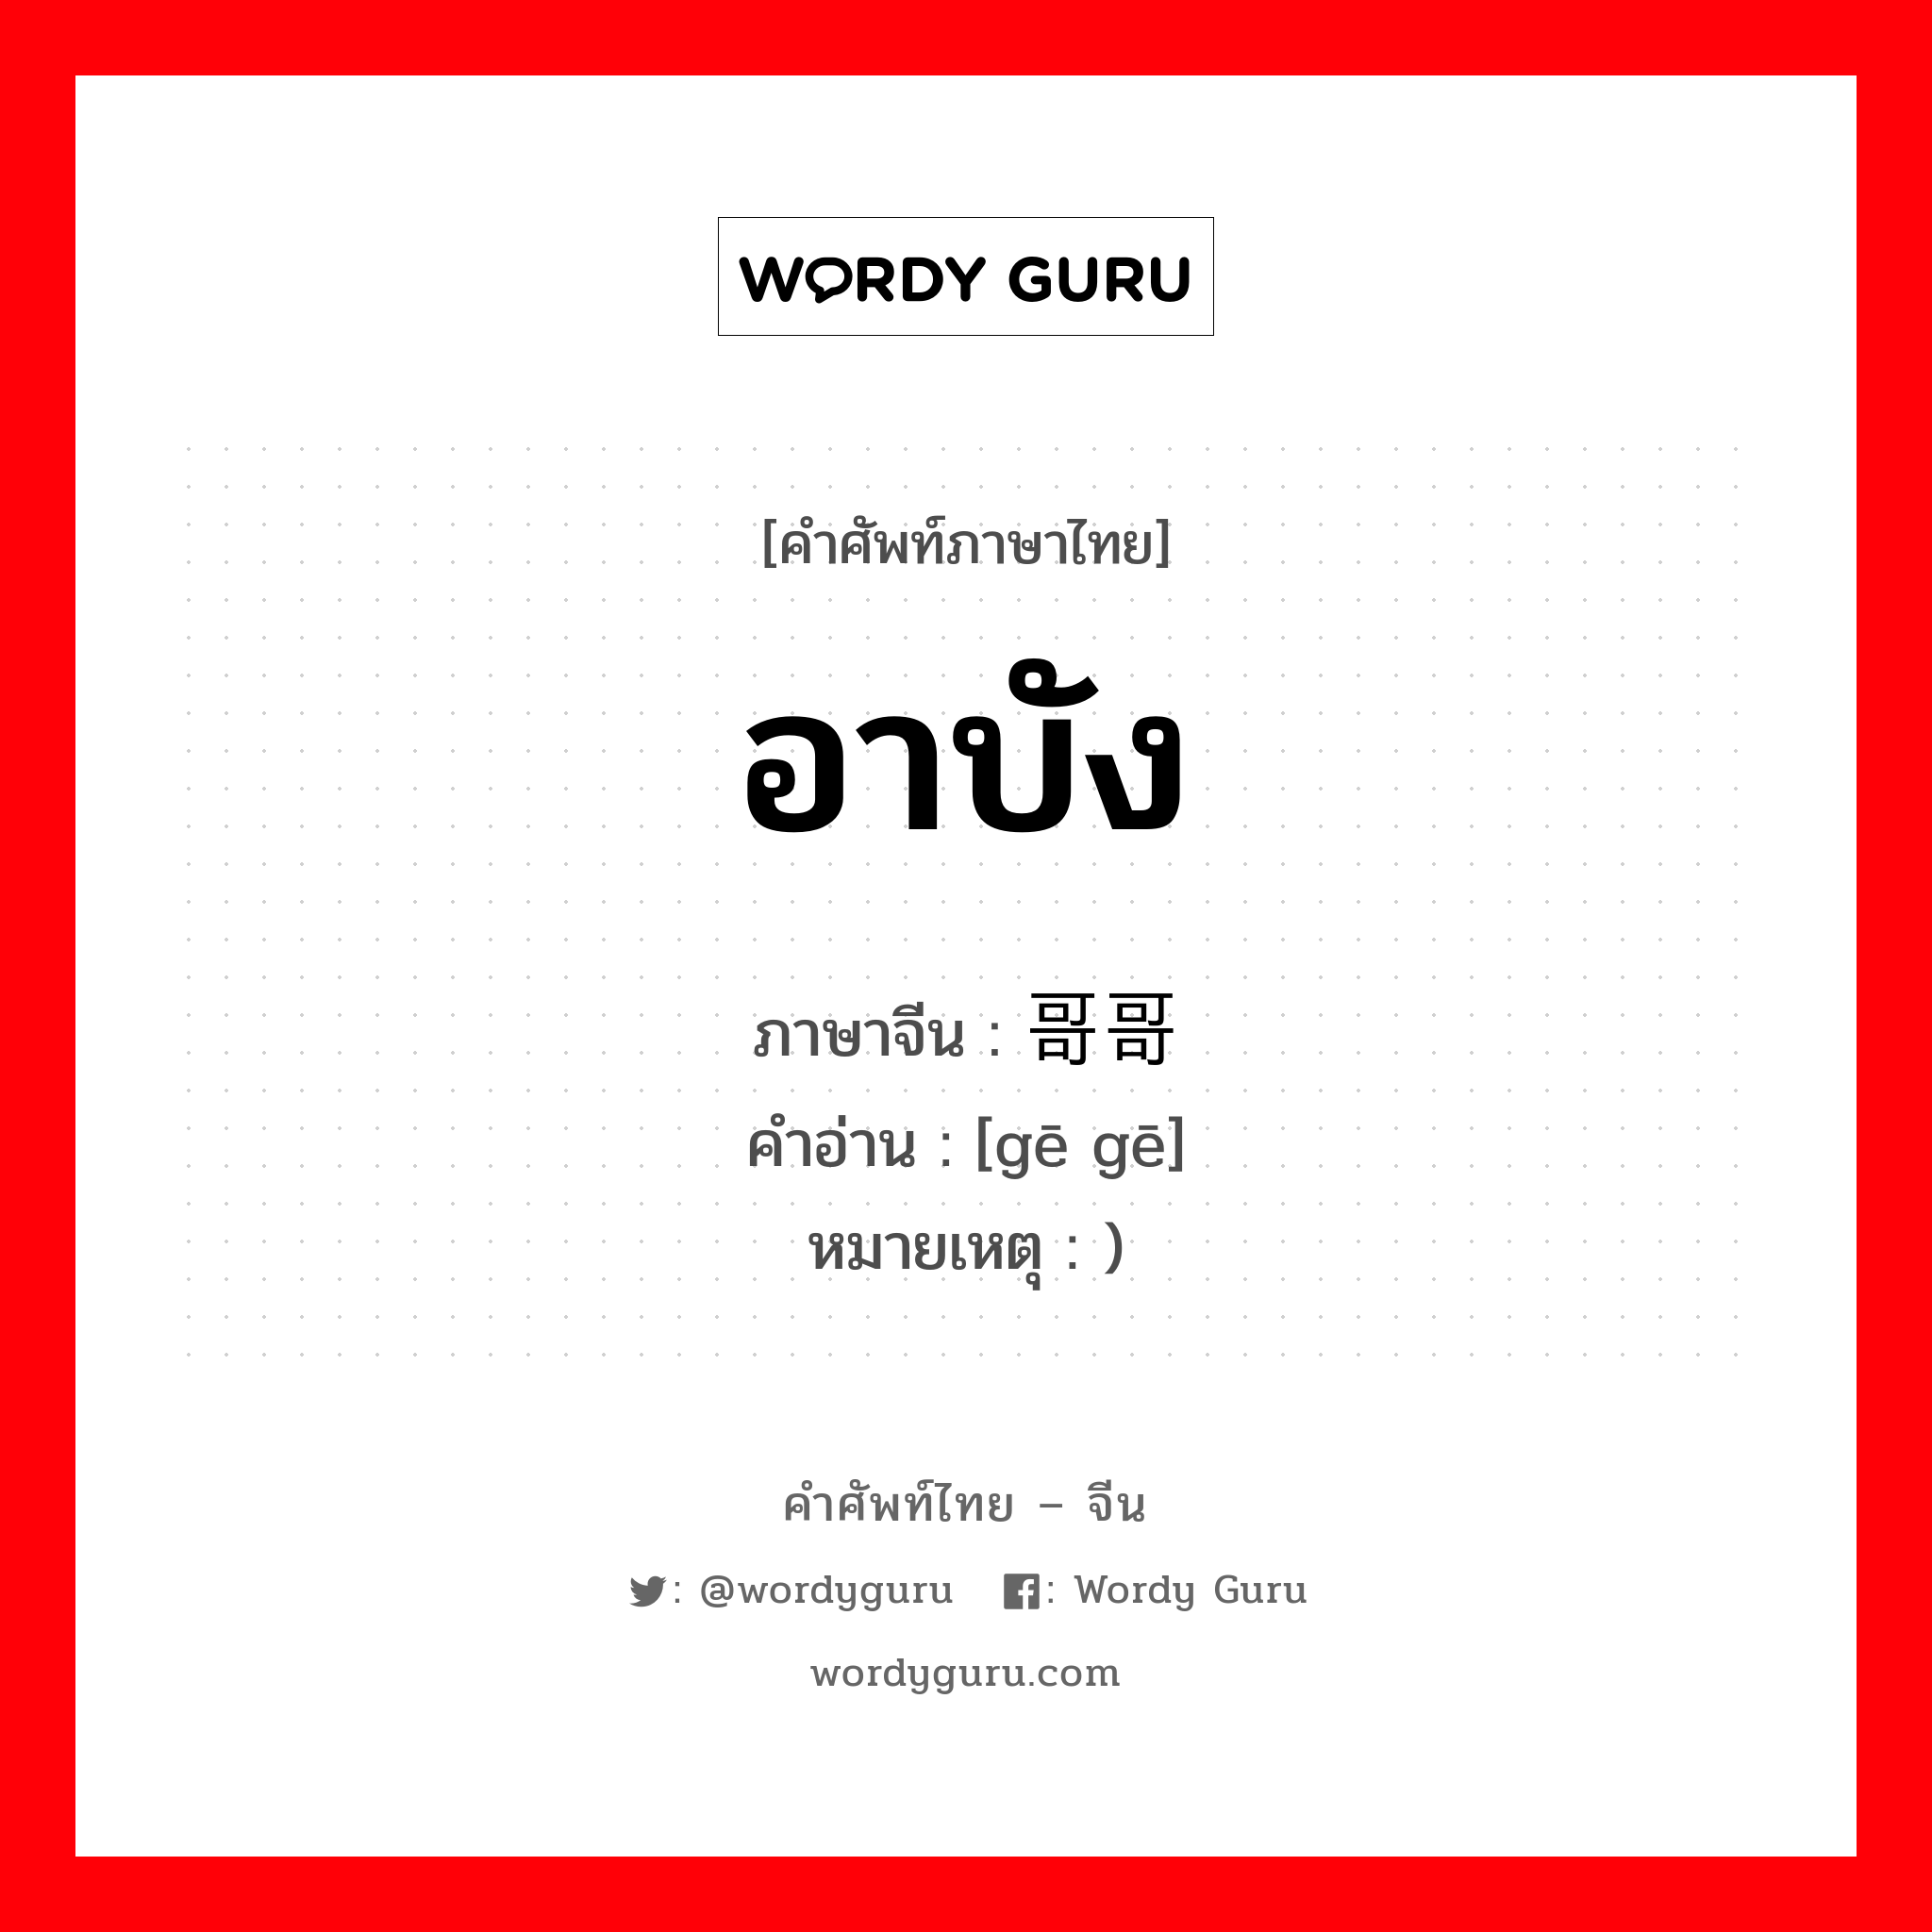 อาบัง ภาษาจีนคืออะไร, คำศัพท์ภาษาไทย - จีน อาบัง ภาษาจีน 哥哥 คำอ่าน [gē gē] หมายเหตุ )